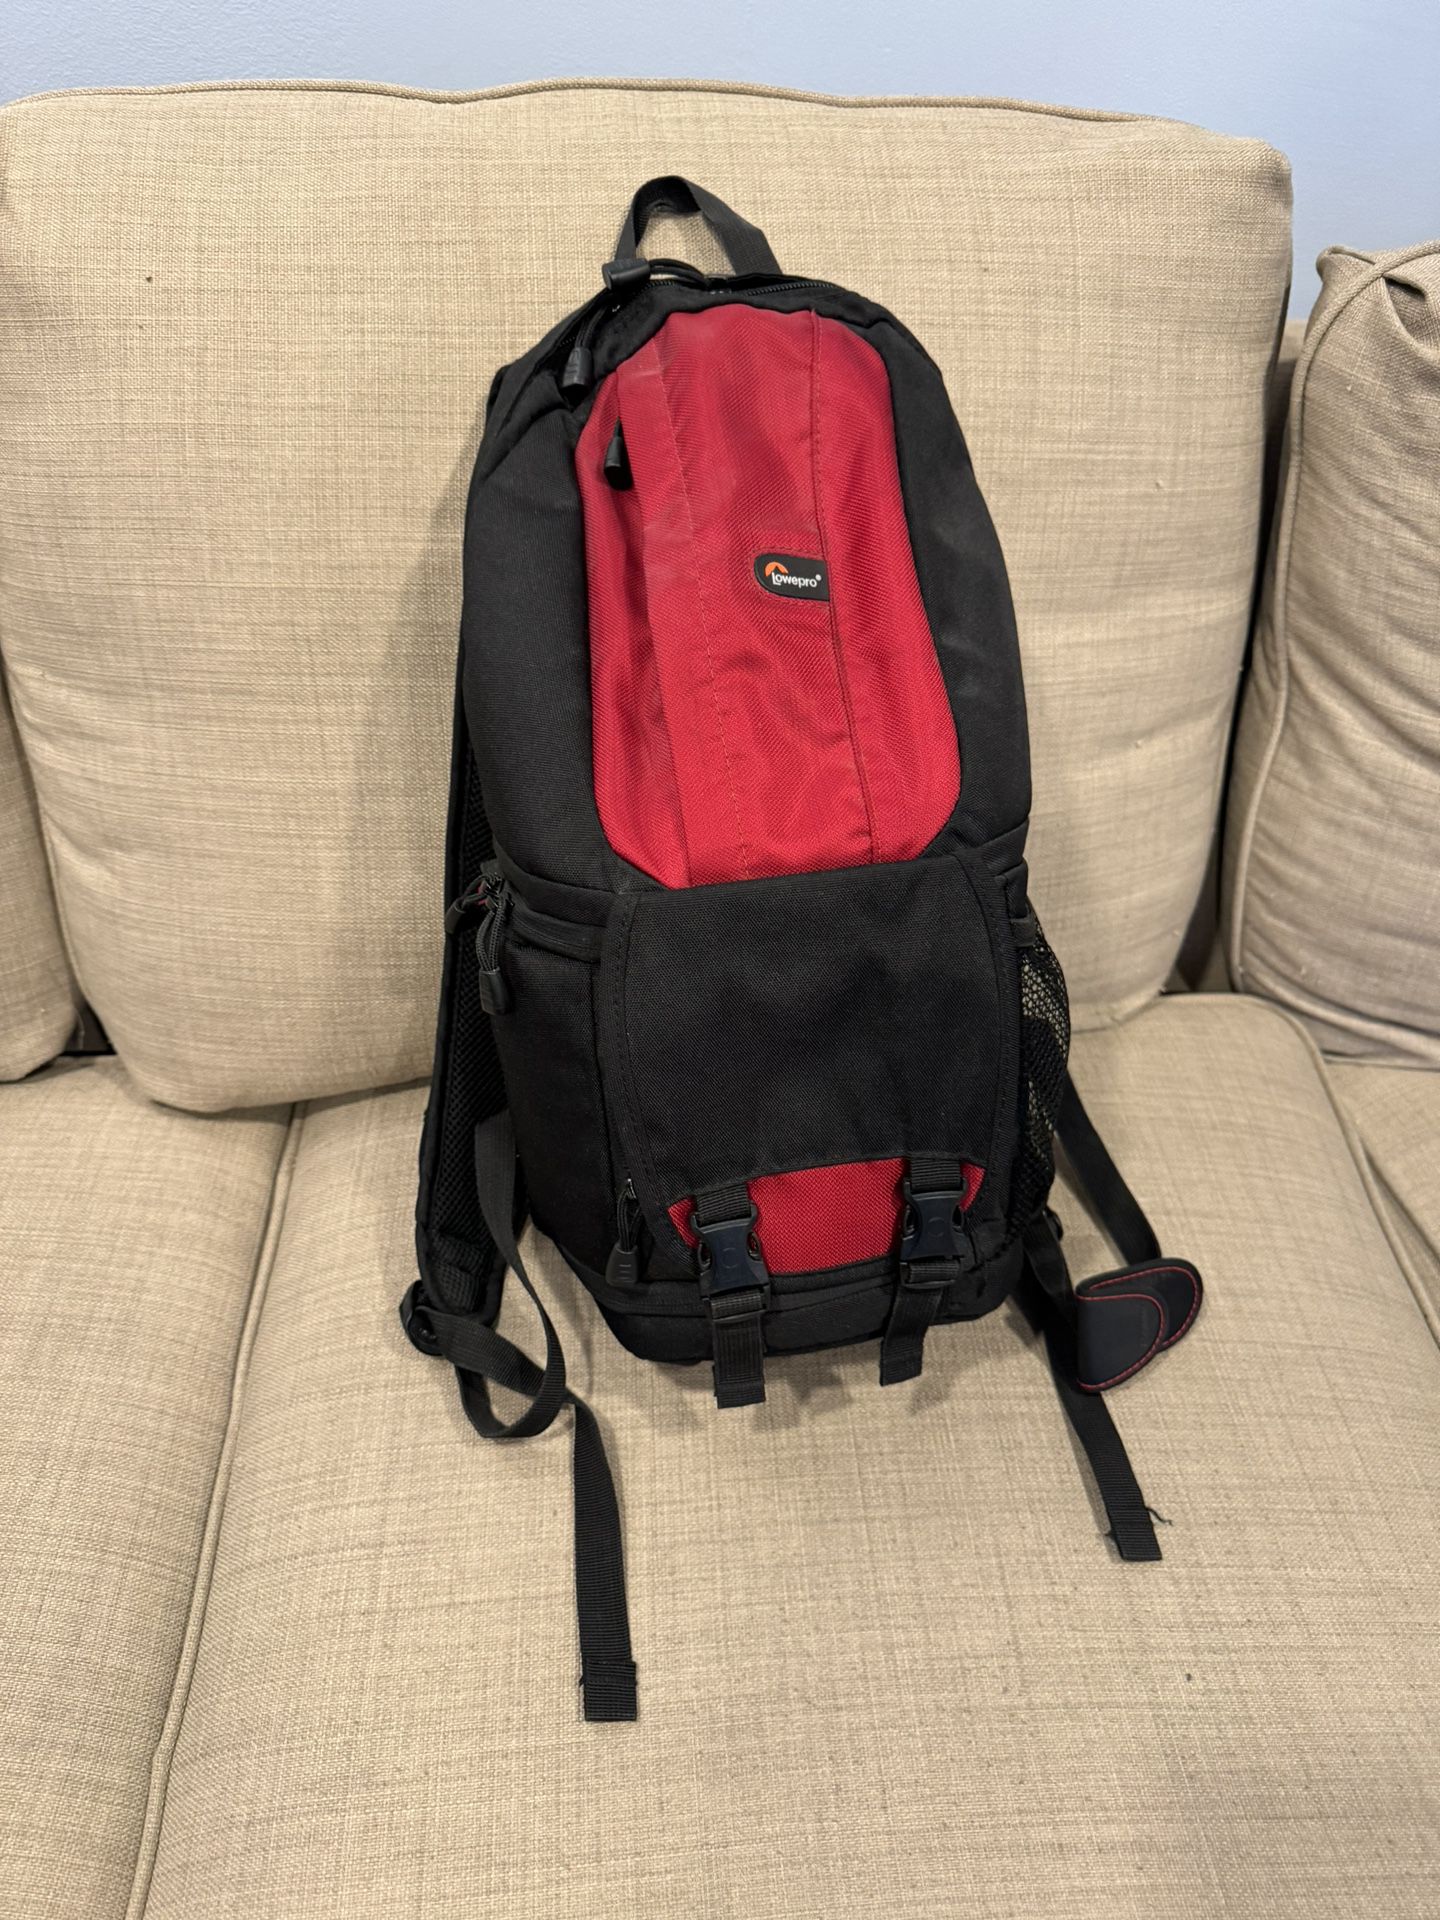 LowePro Fastpack 100 Camera Backpack